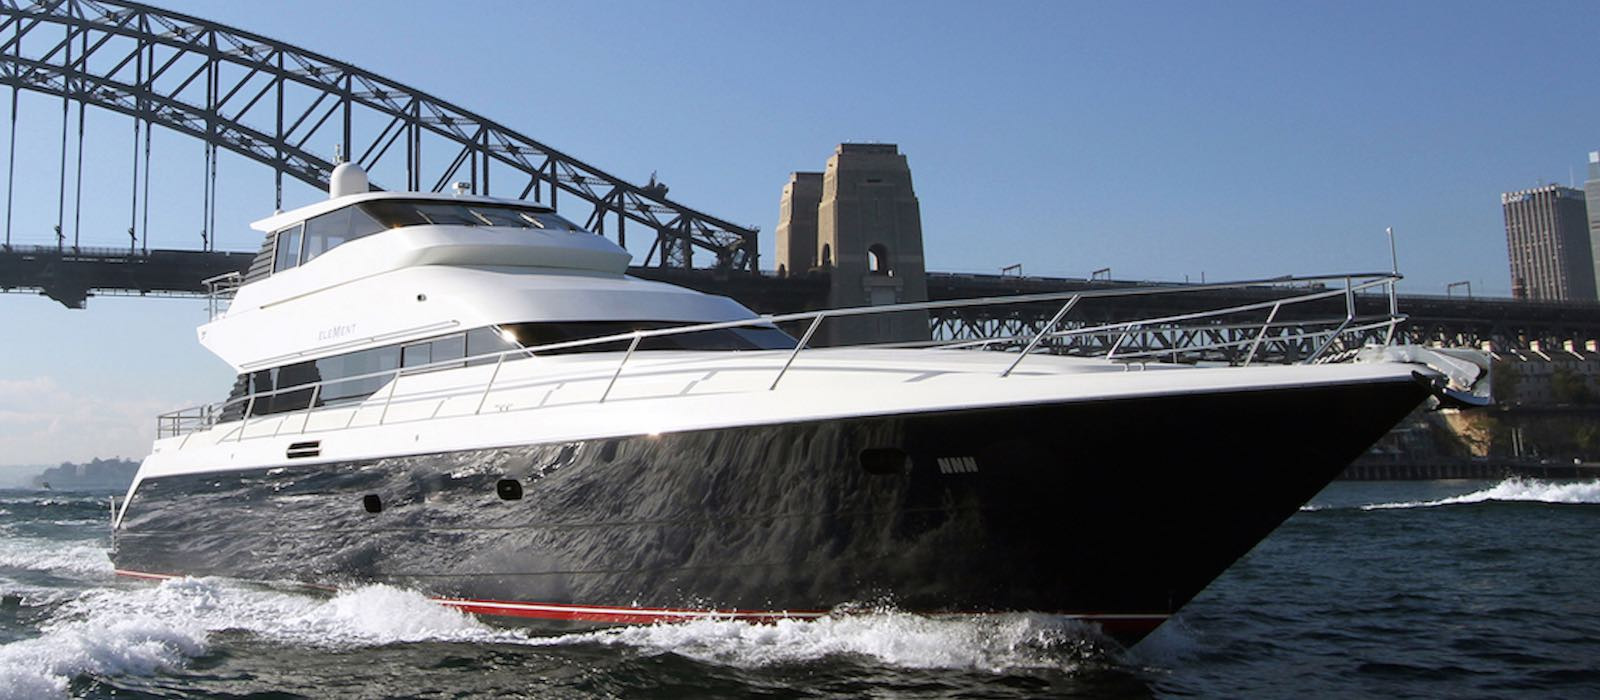 yacht sales jobs sydney